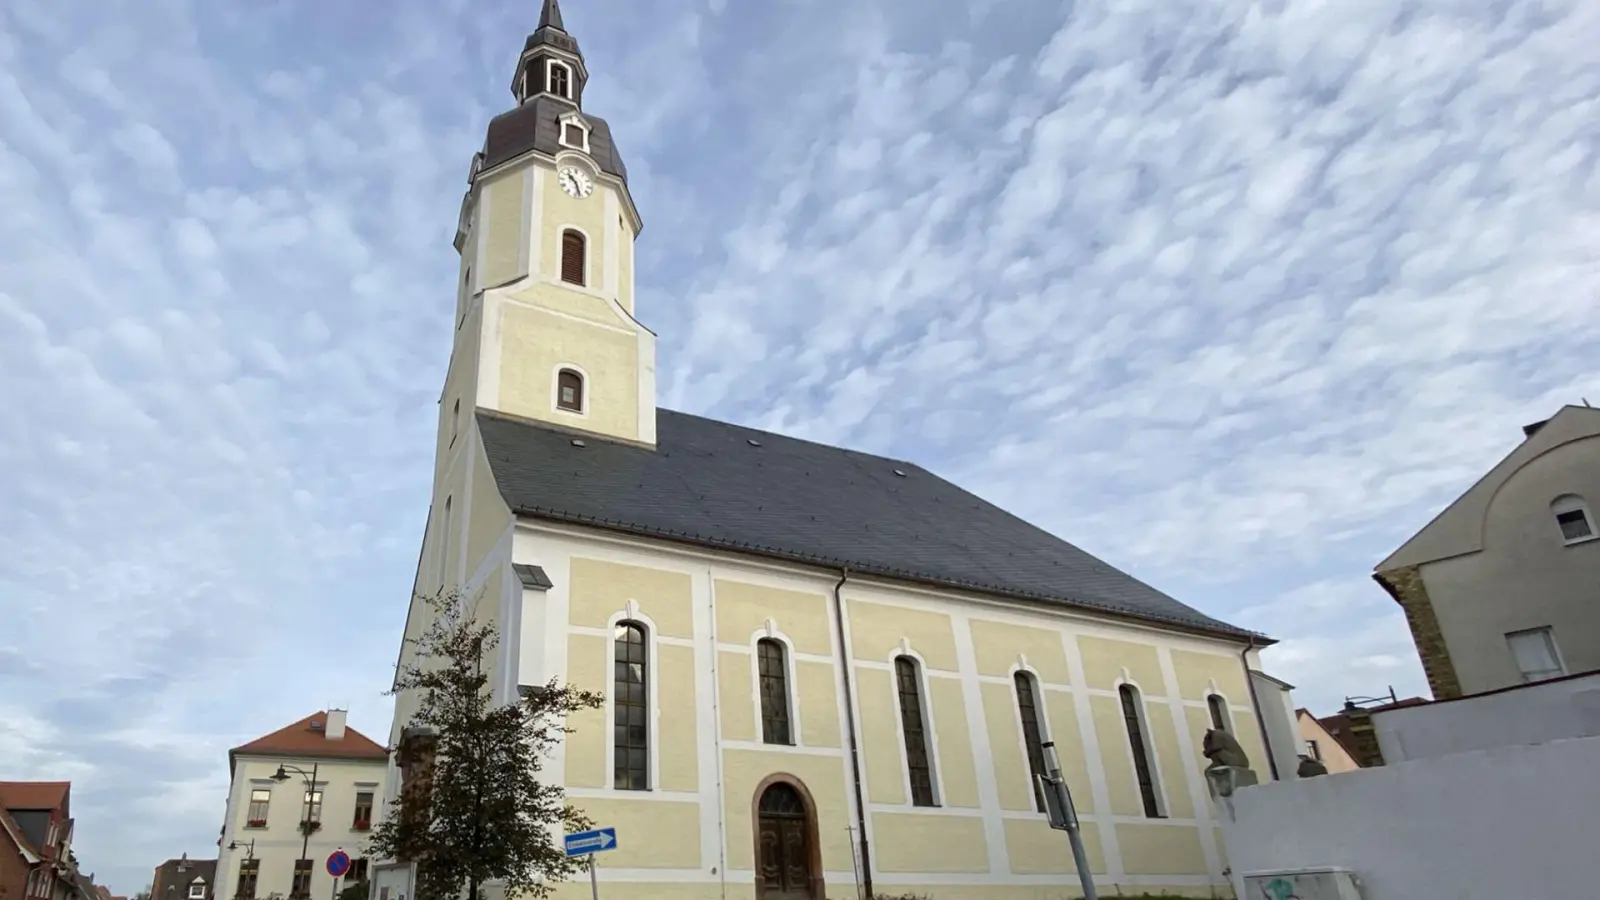 Förderantrag erfolgreich: Kirche St. Moritz erhält 300.000 Euro vom Bund (Foto: taucha-kompakt.de)